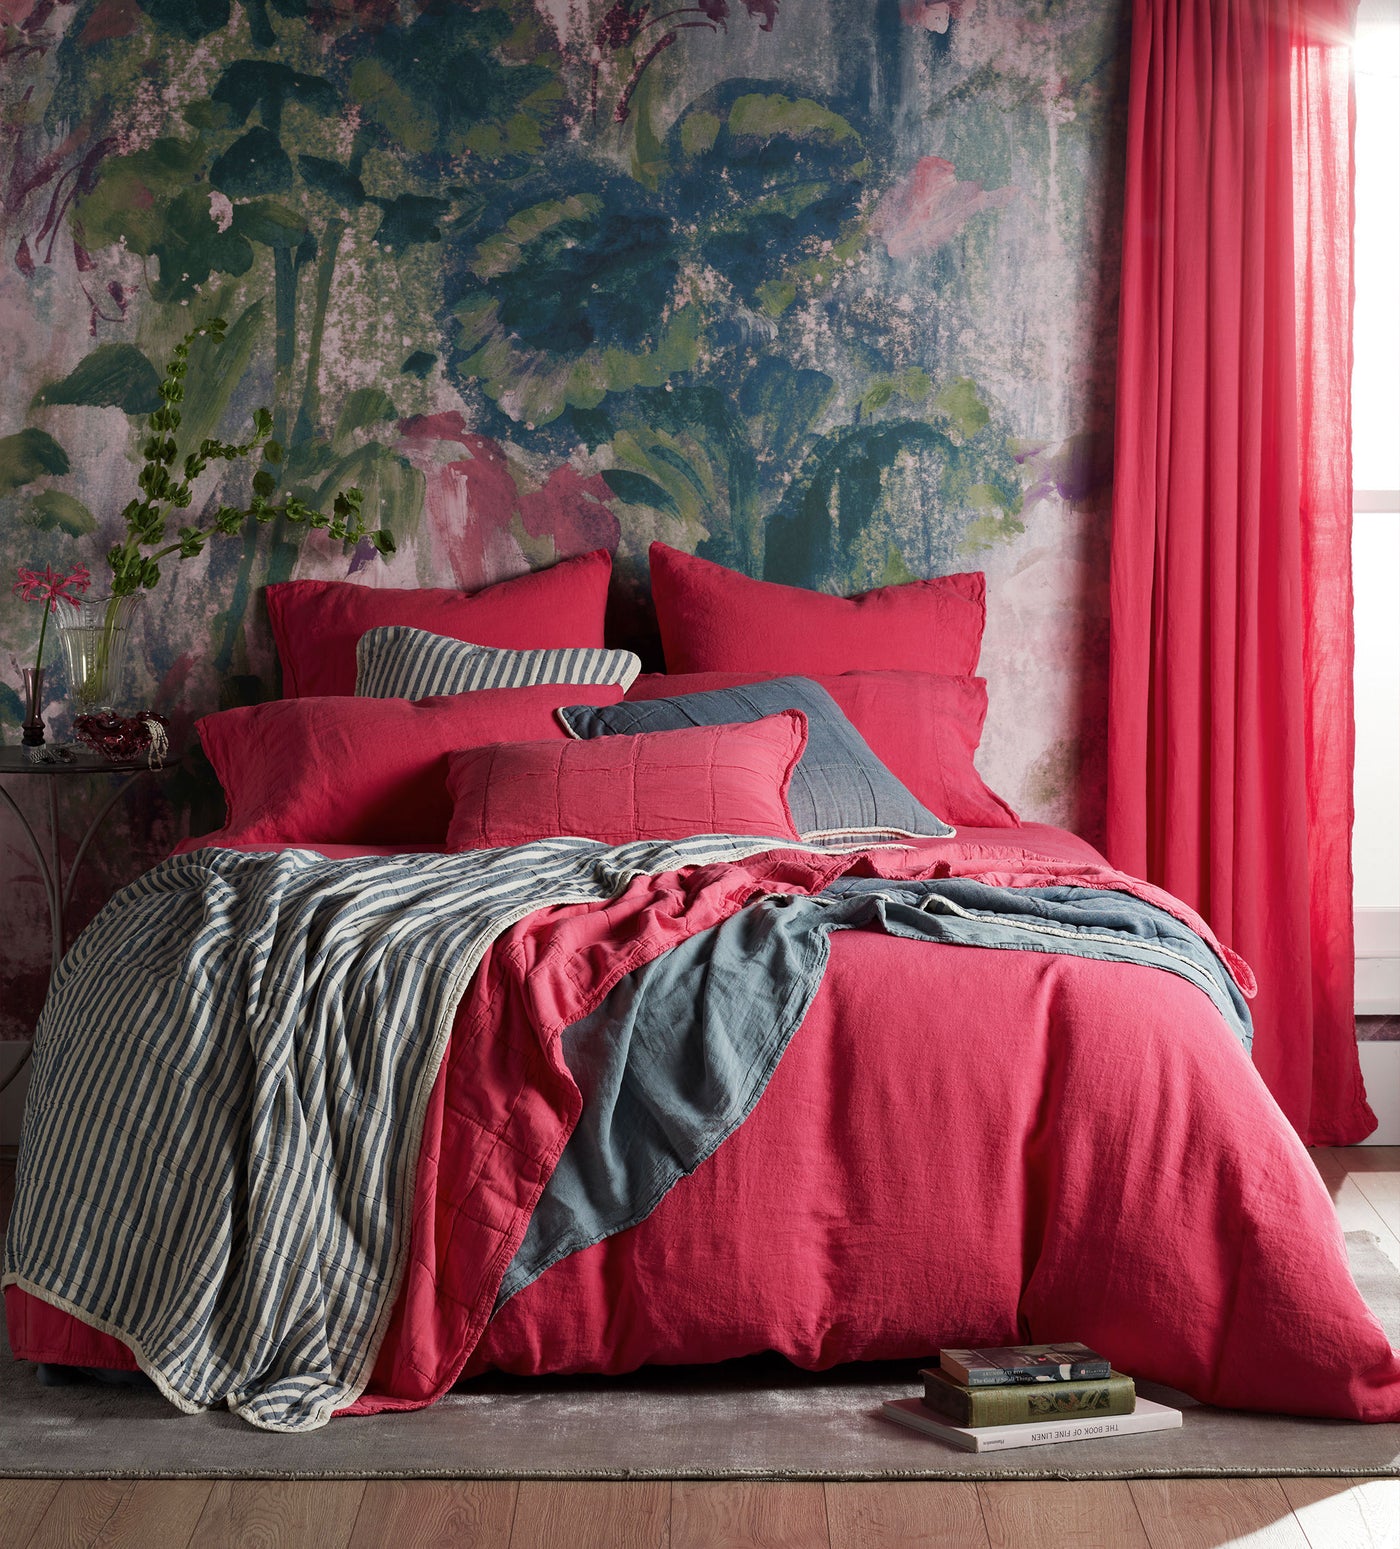 Hot Pink 100% Linen Housewife Pillowcase